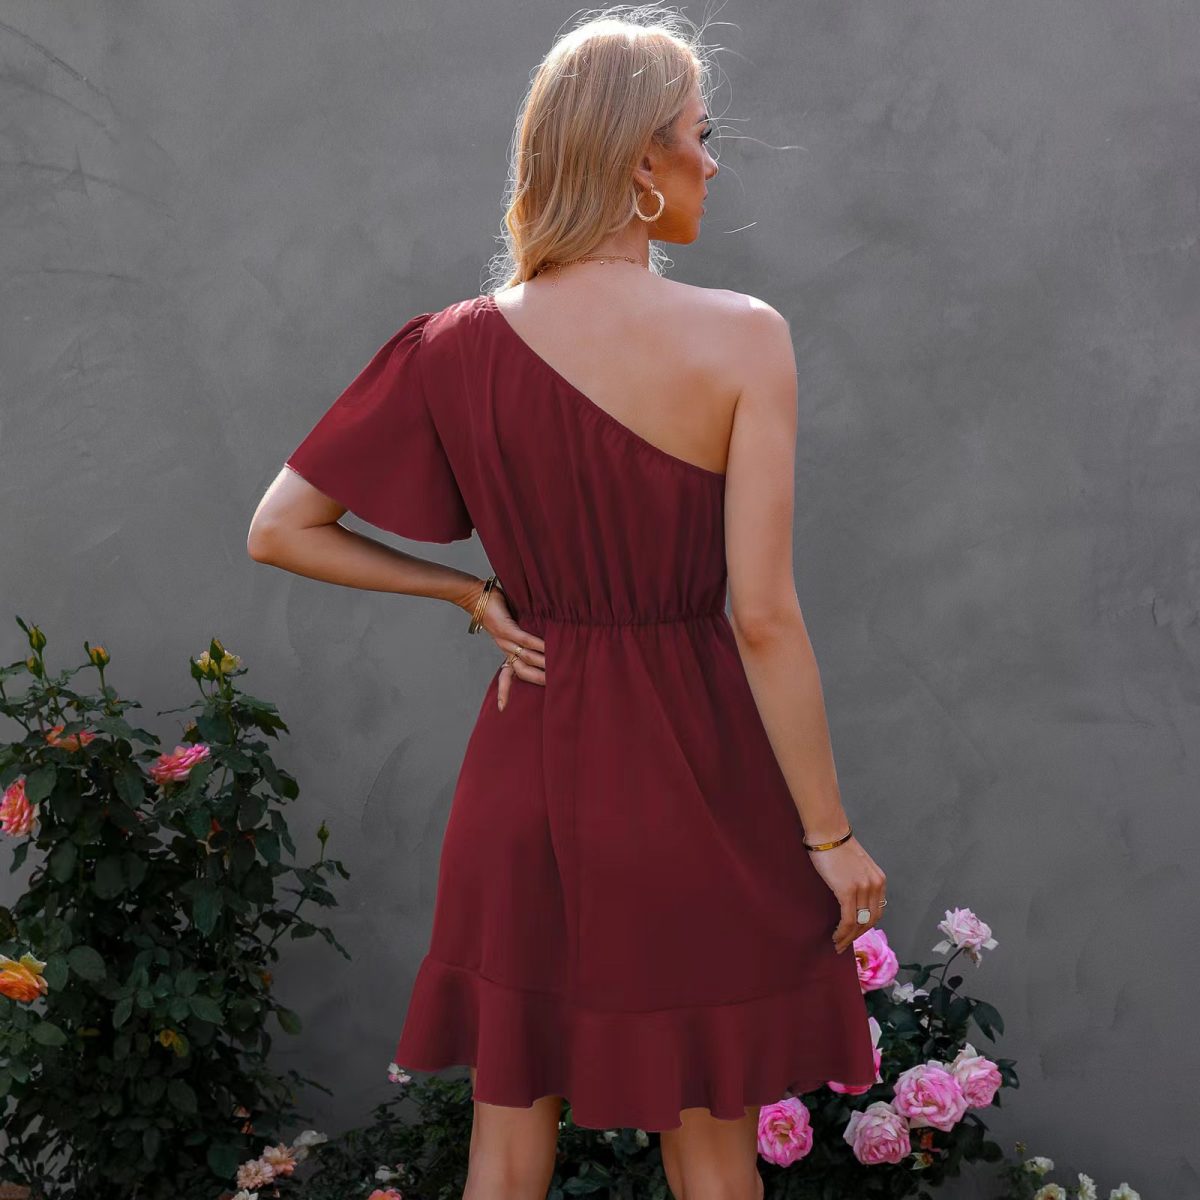 Single Side Sleeve Off Shoulder Ruffled Solid Color High Waist Off Shoulder Midi Dress in Dresses